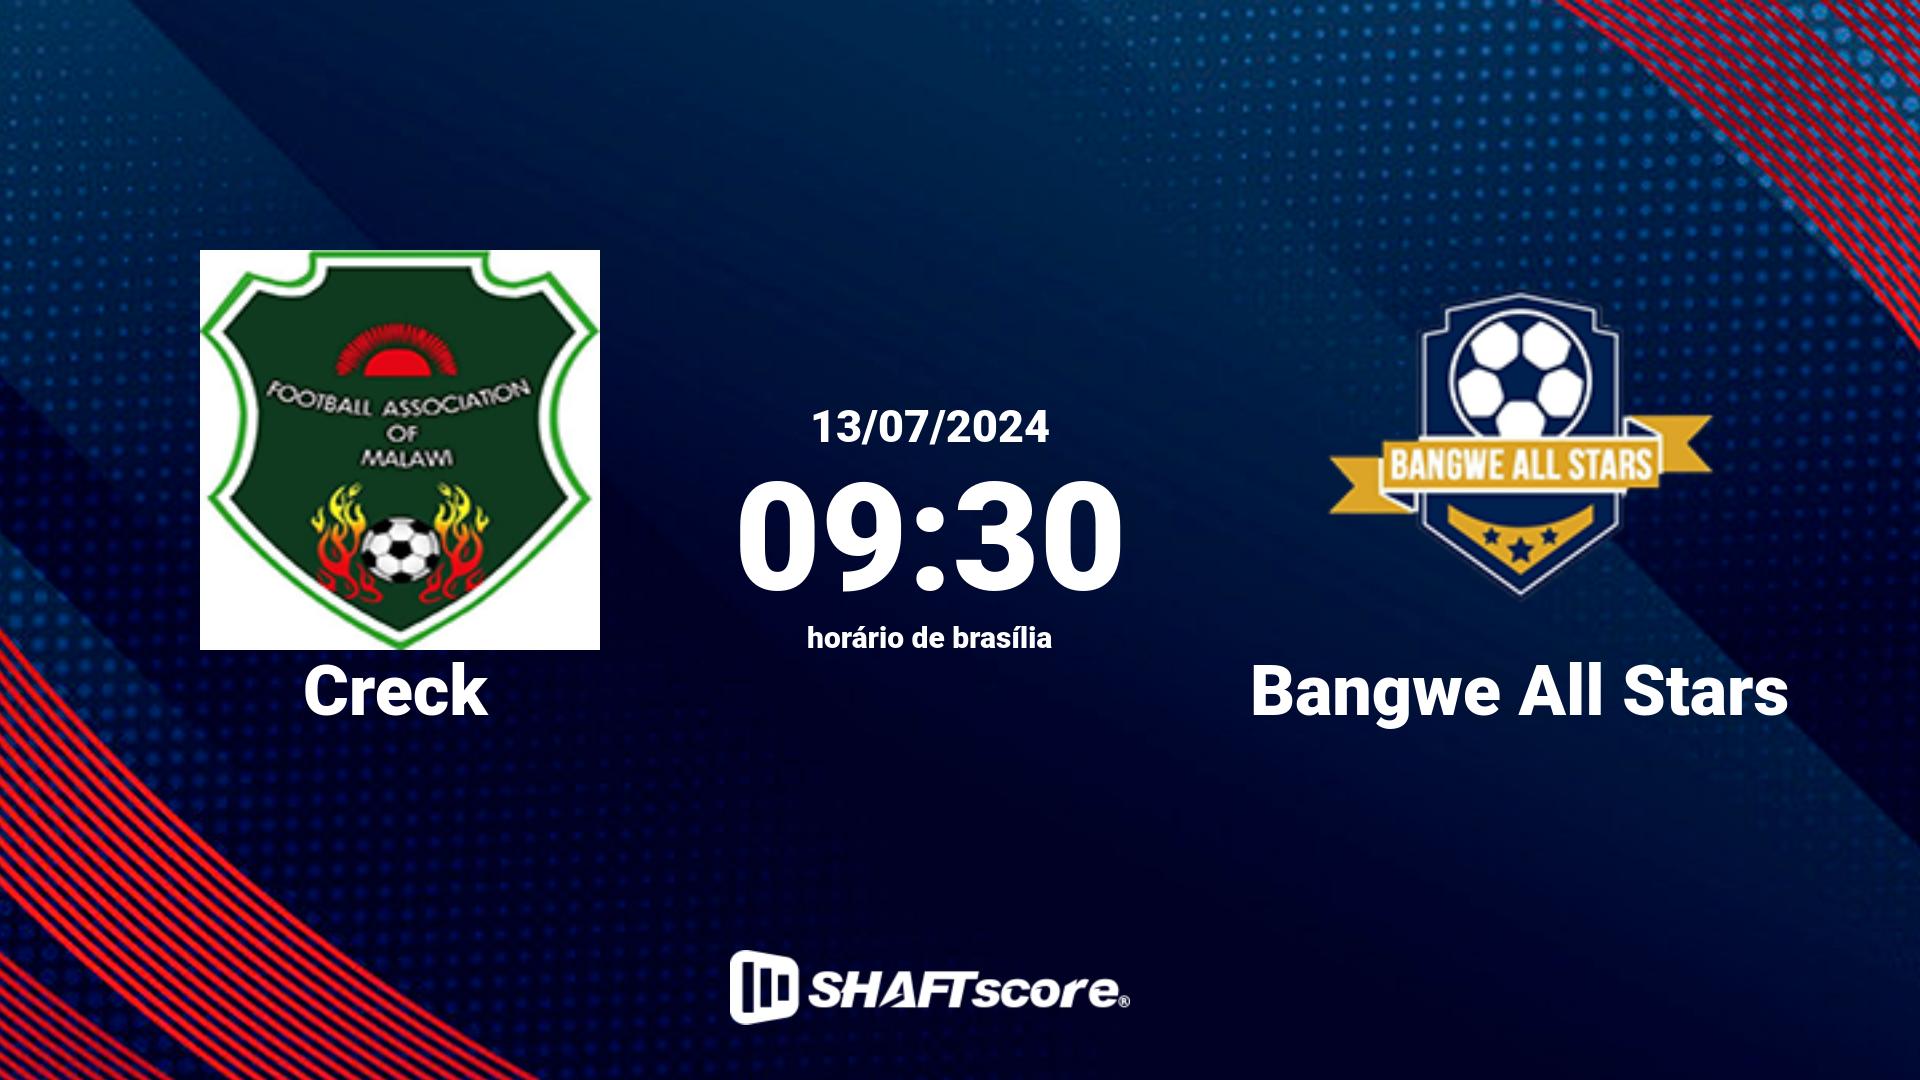 Estatísticas do jogo Creck vs Bangwe All Stars 13.07 09:30